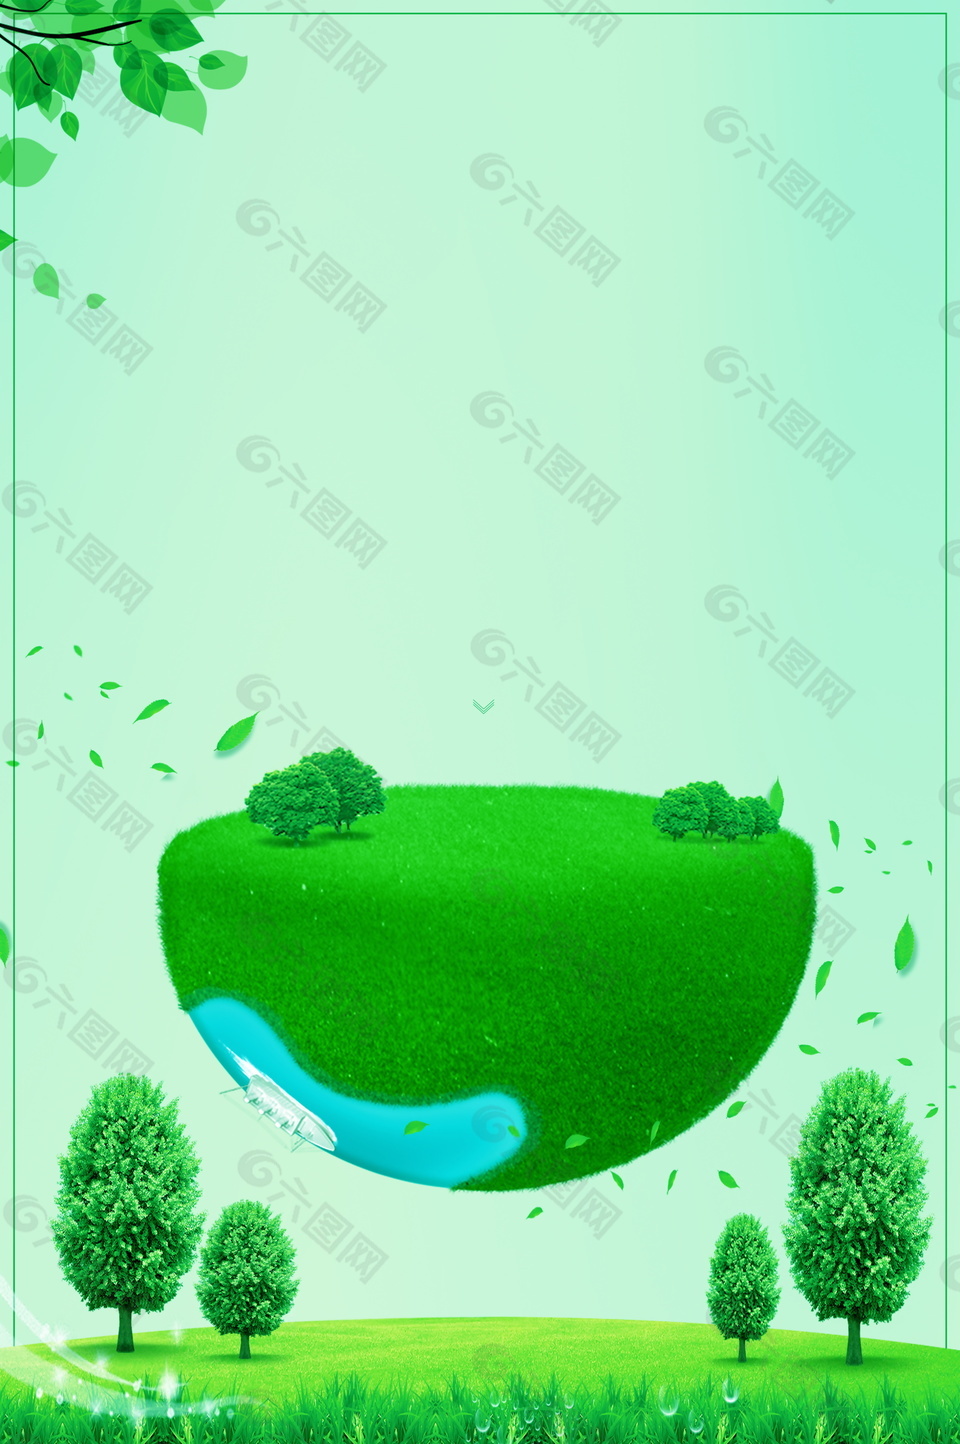 绿草半圆清新边框环境背景素材